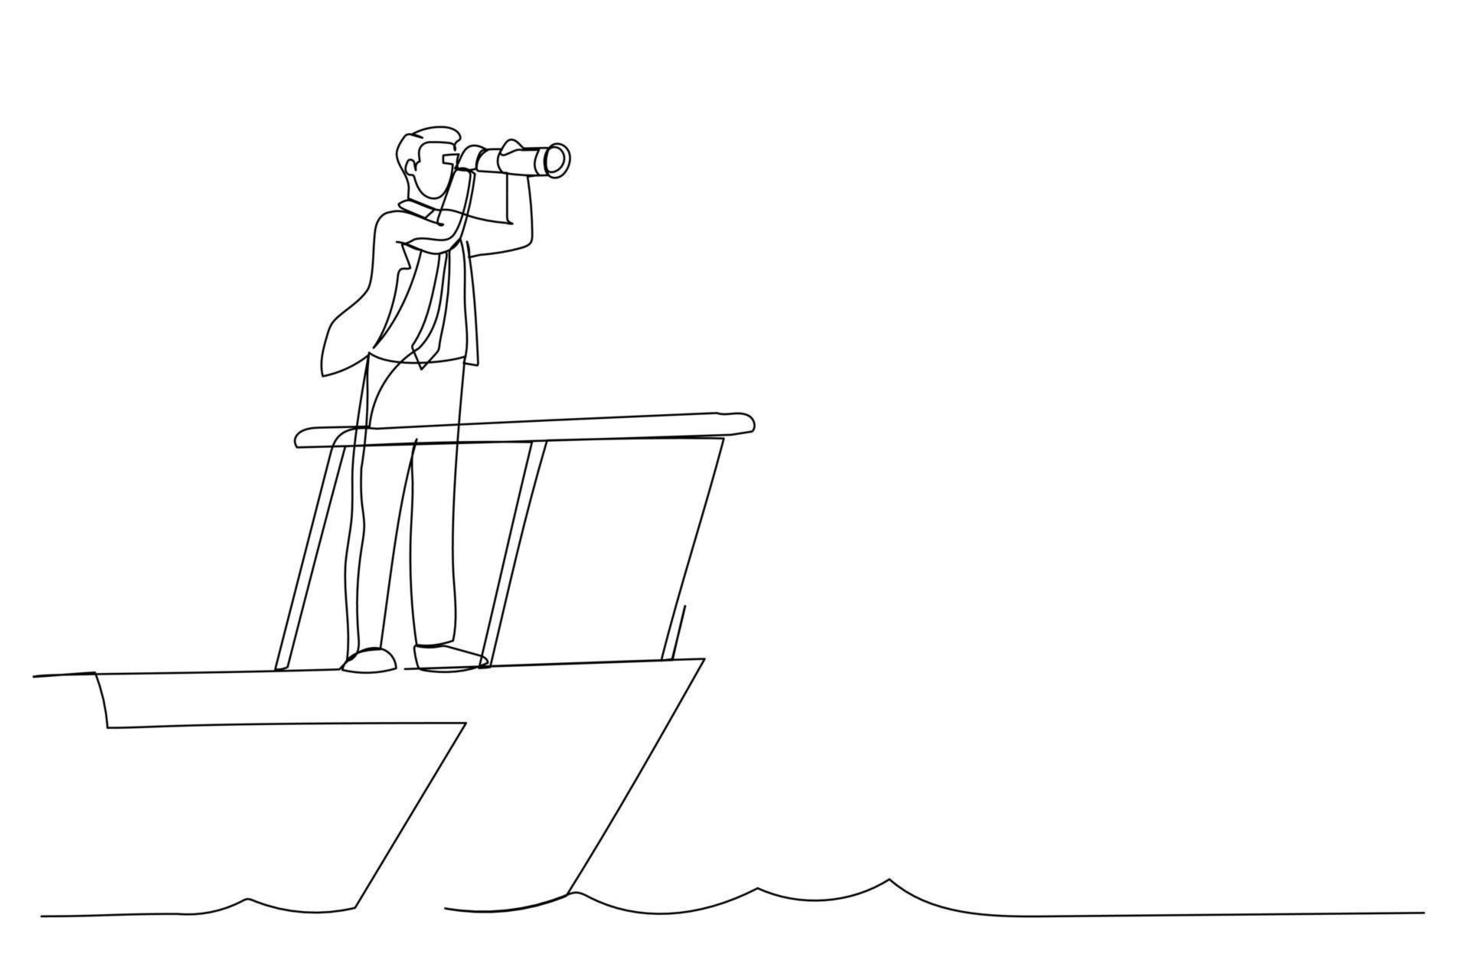 dessin animé d'homme d'affaires intelligent capitaine de bateau contrôle barre de volant avec vision de télescope. leadership d'entreprise et visionnaire pour diriger le succès de l'entreprise. style d'art en ligne continue vecteur